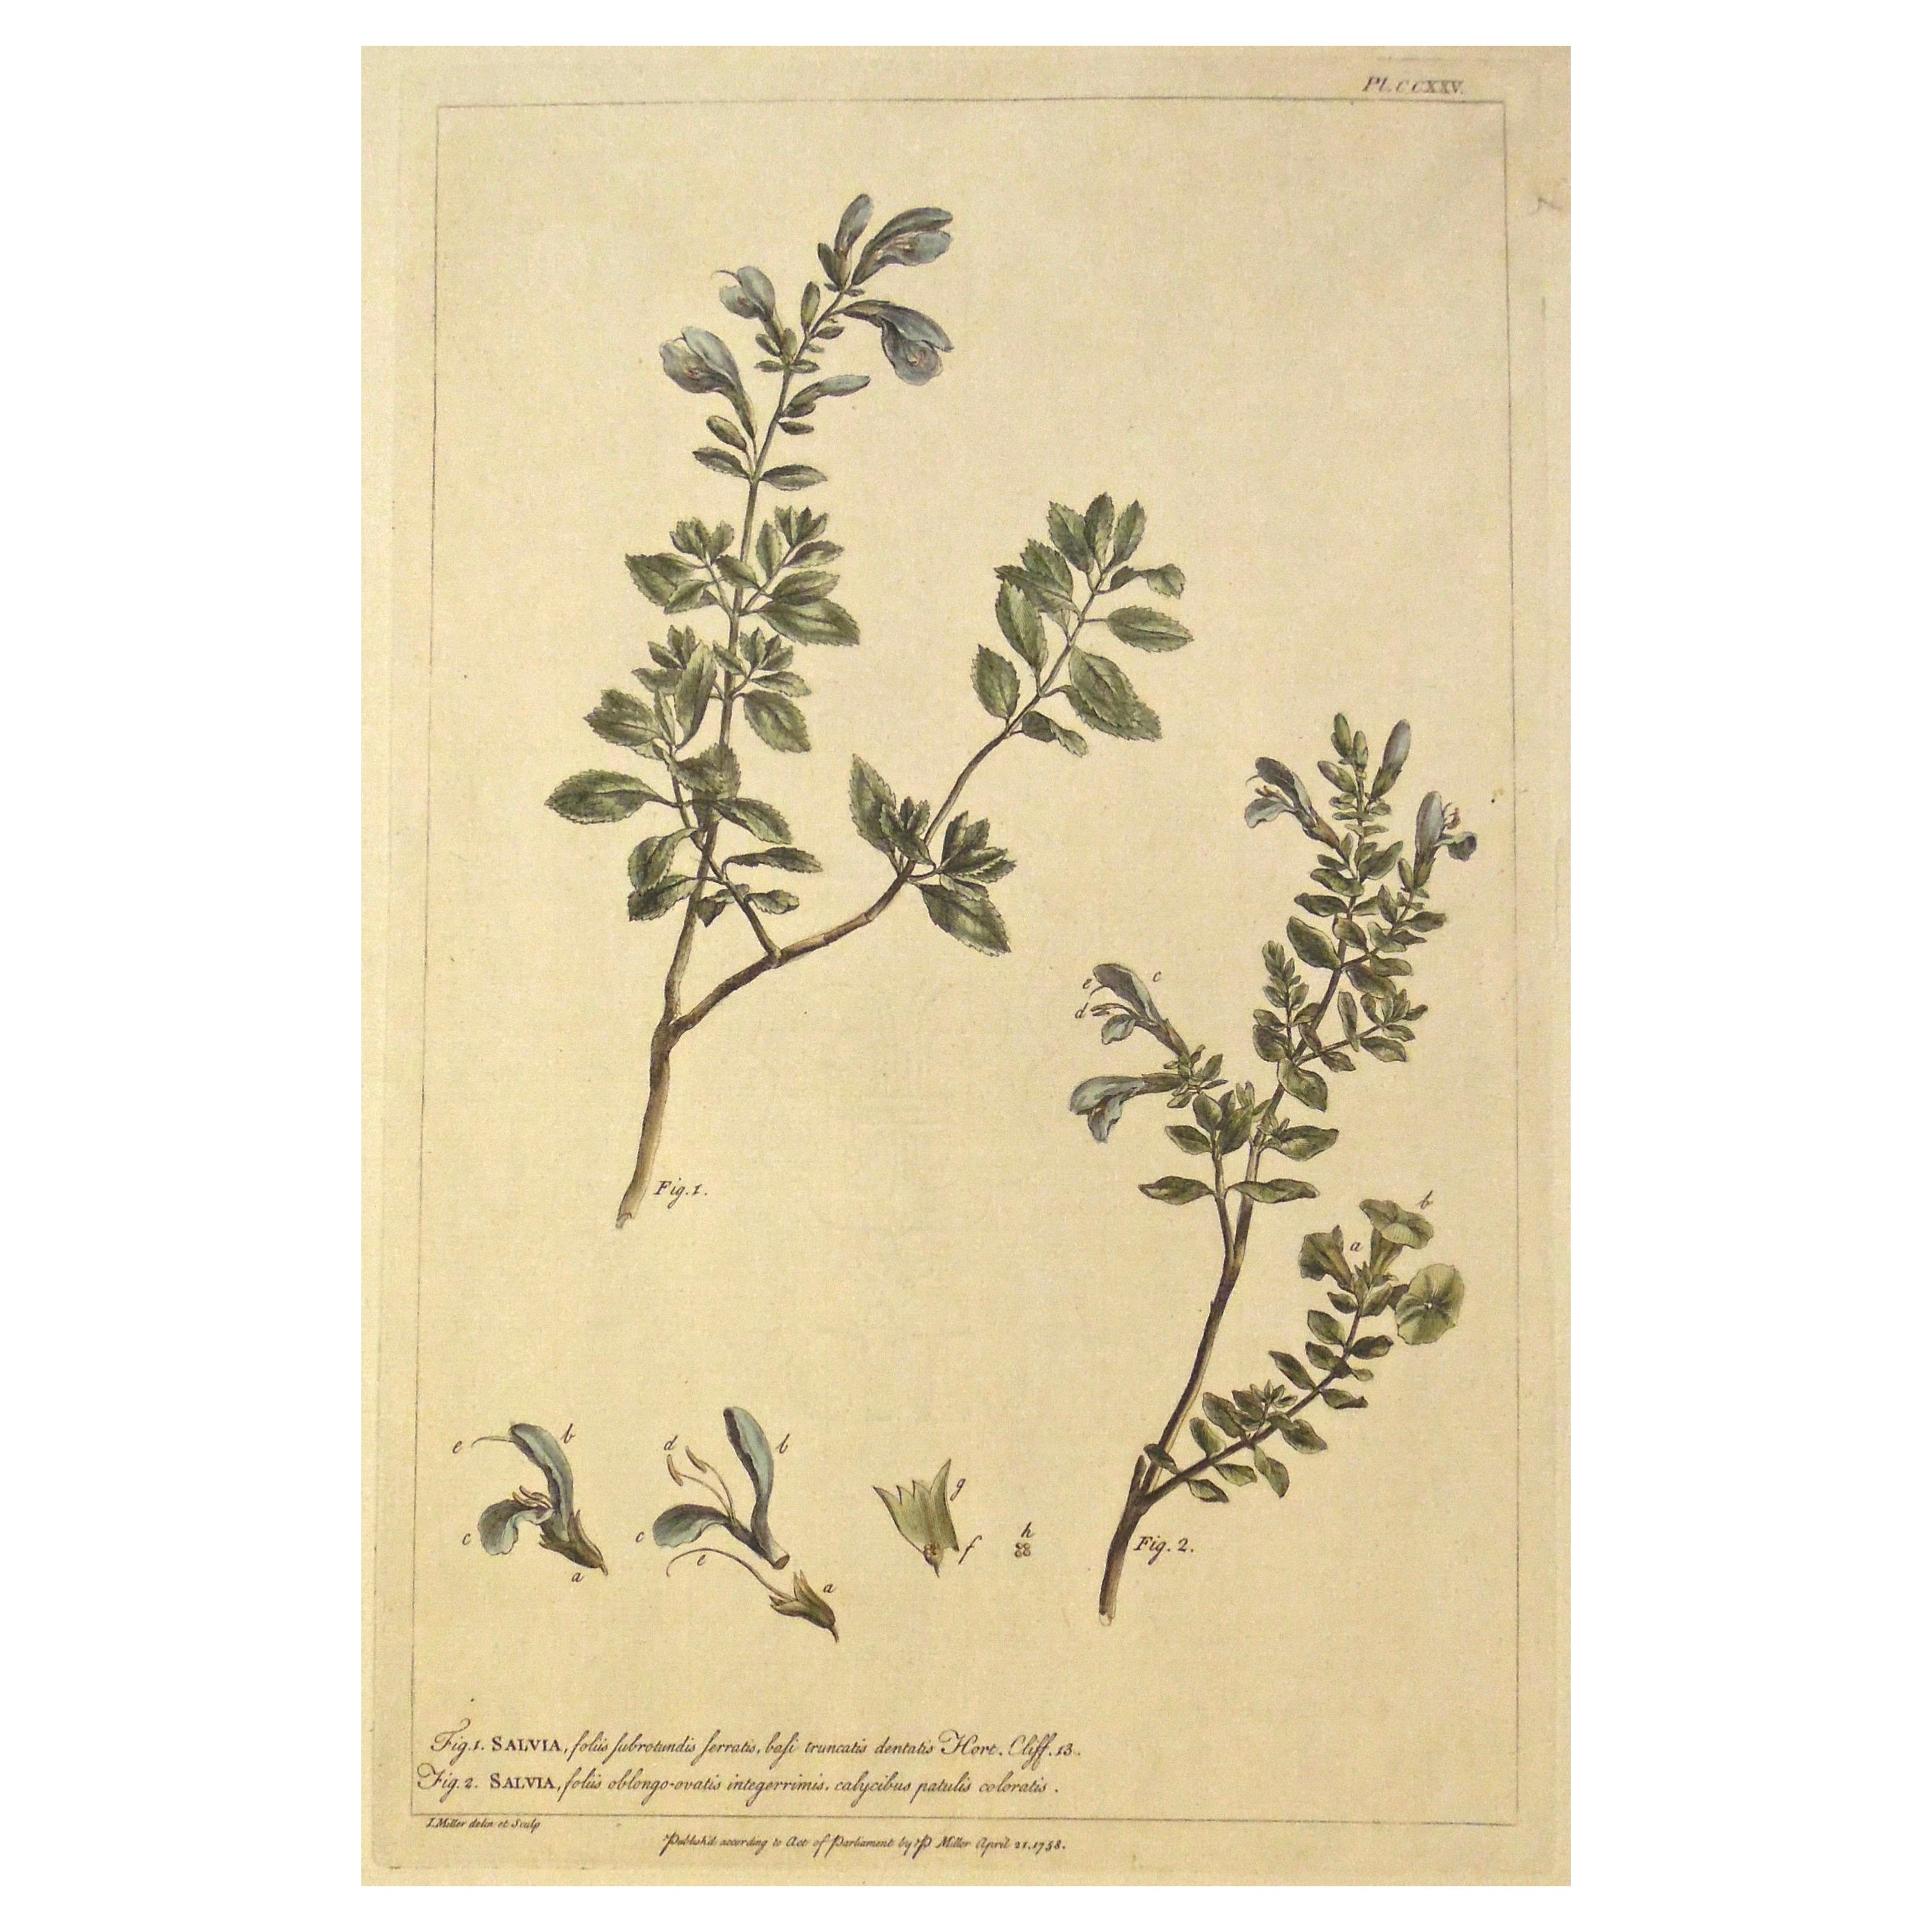 Gravure botanique originale des années 1750 de Salvia - The Garderner's Dictionary 